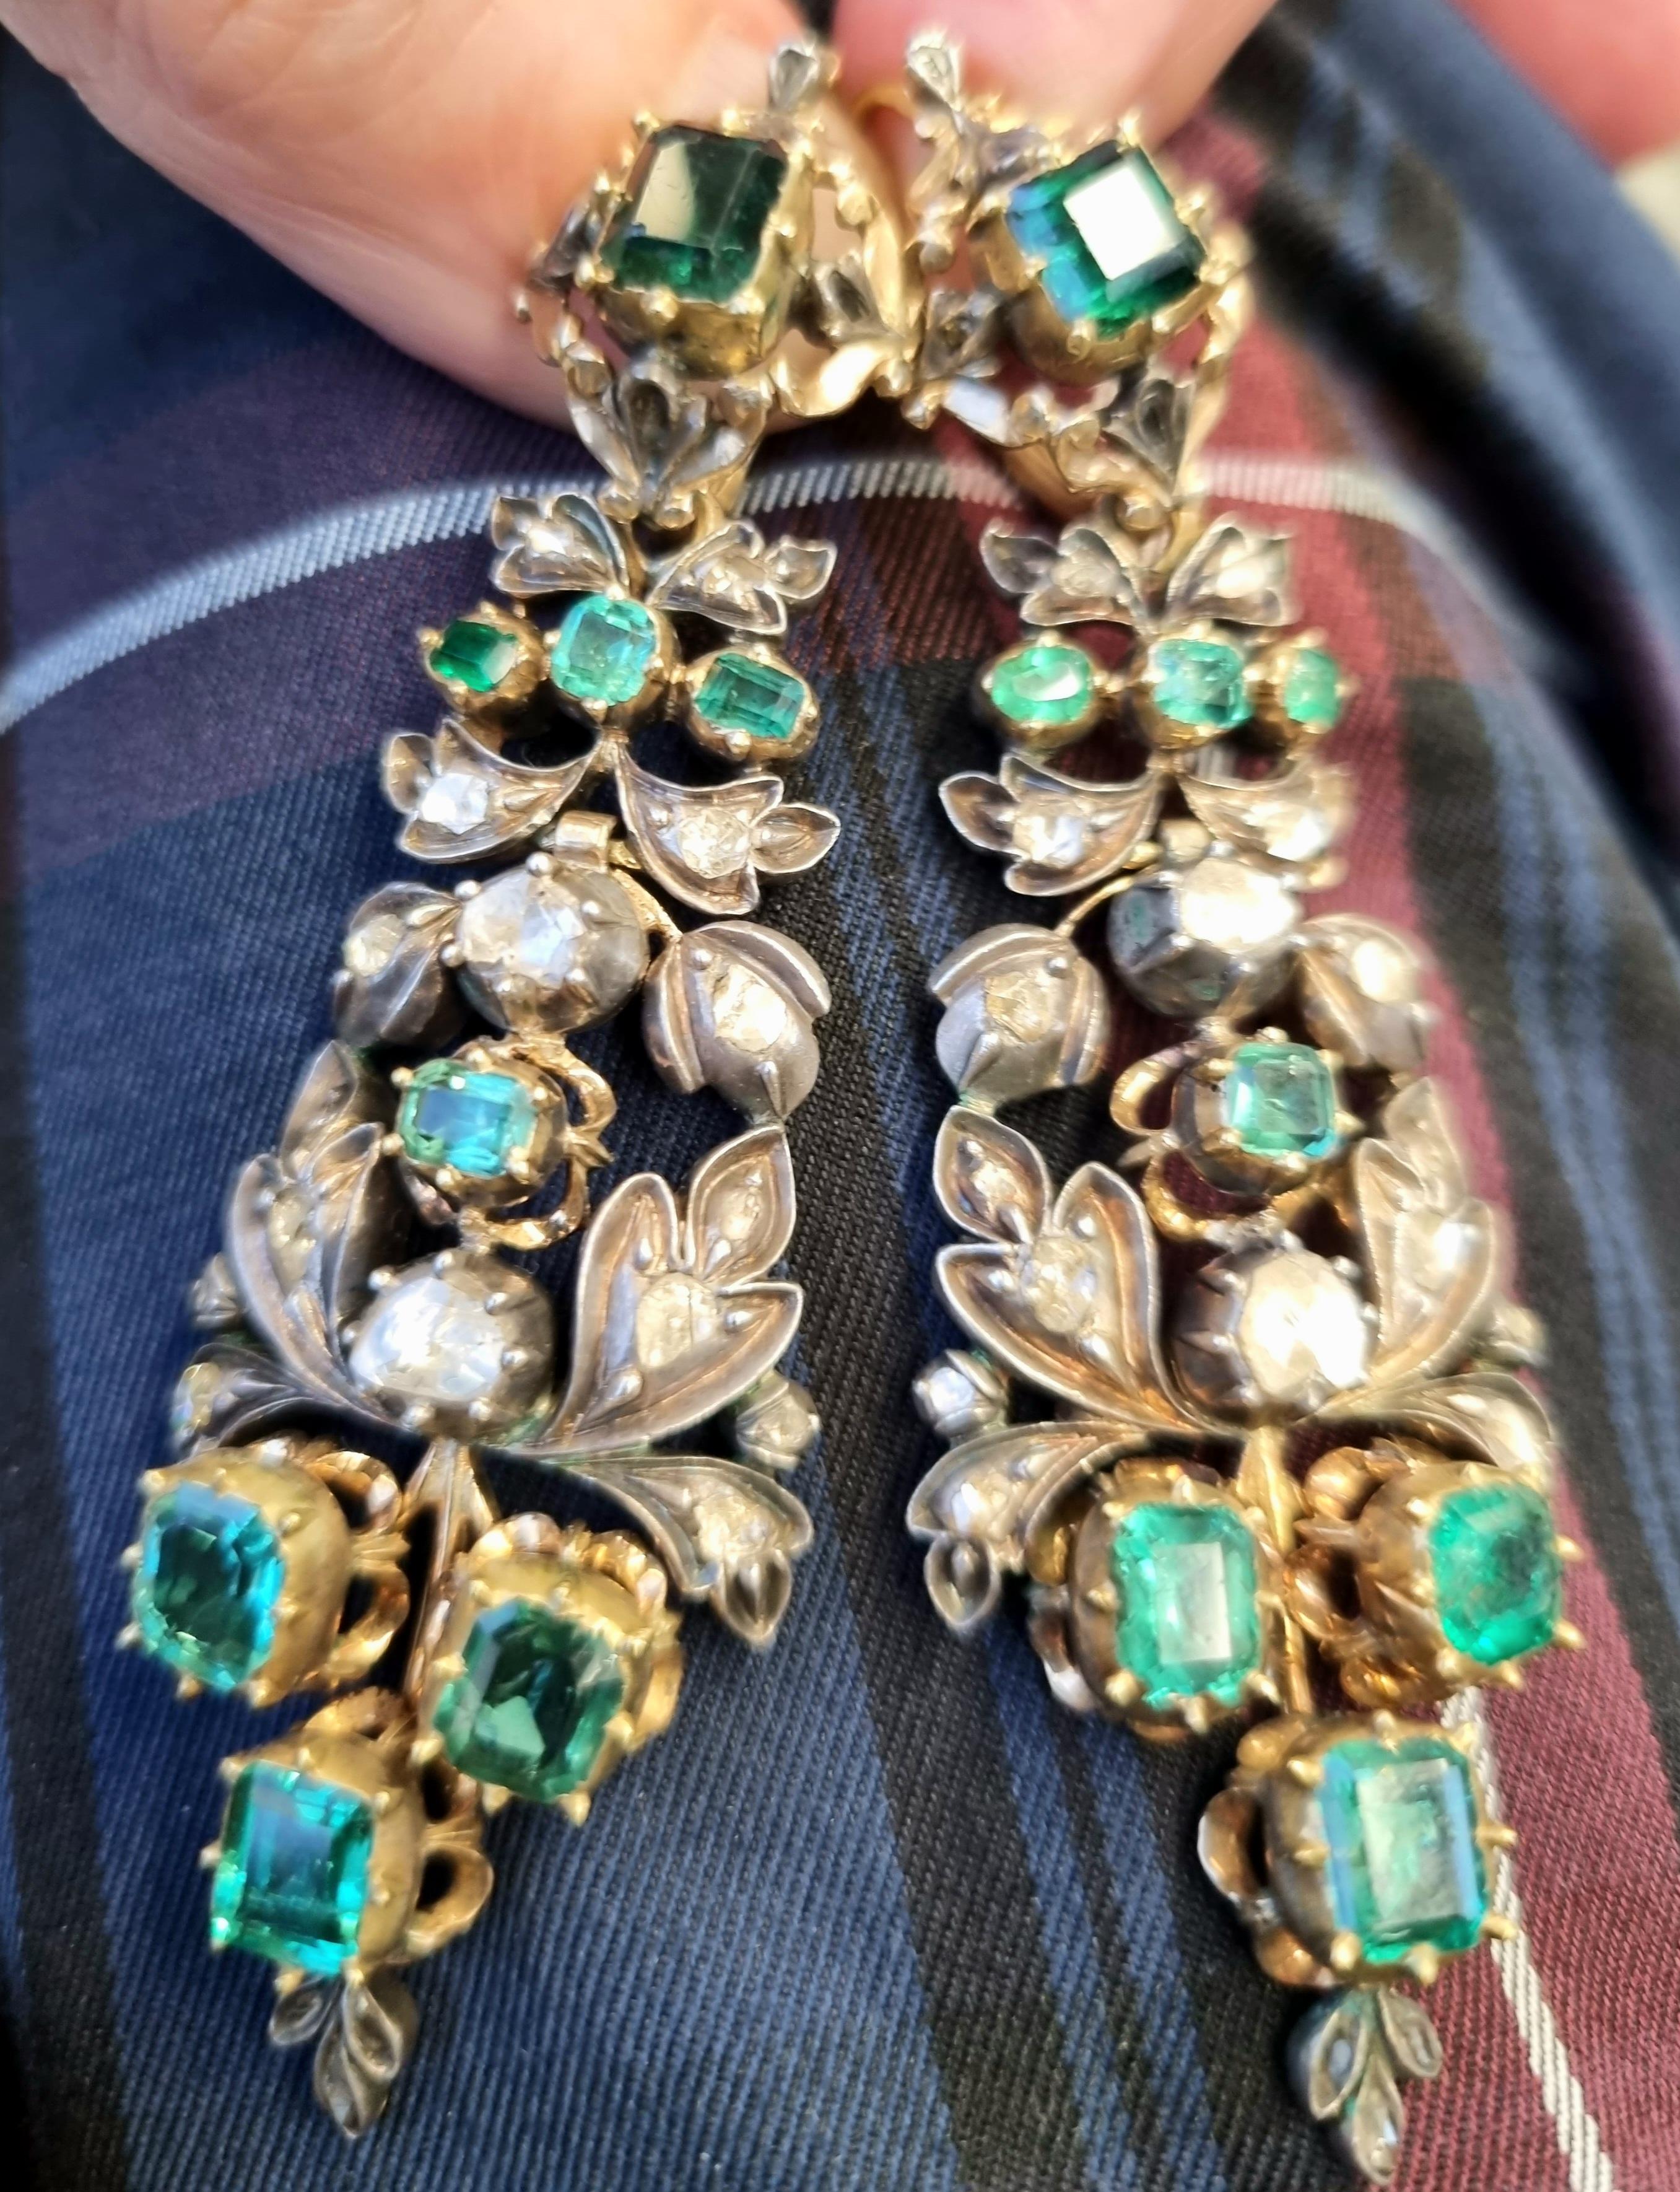 Glänzendes Paar Kronleuchter-Ohrringe in Museumsqualität (Sammlerstück), mit elektrisch veredelten Smaragden. Intarsien aus Diamanten im Rosen- und Tafelschliff.
Hervorragend erhalten, aus dem späten 18. Jahrhundert (1780). Ein Satz funkelnder